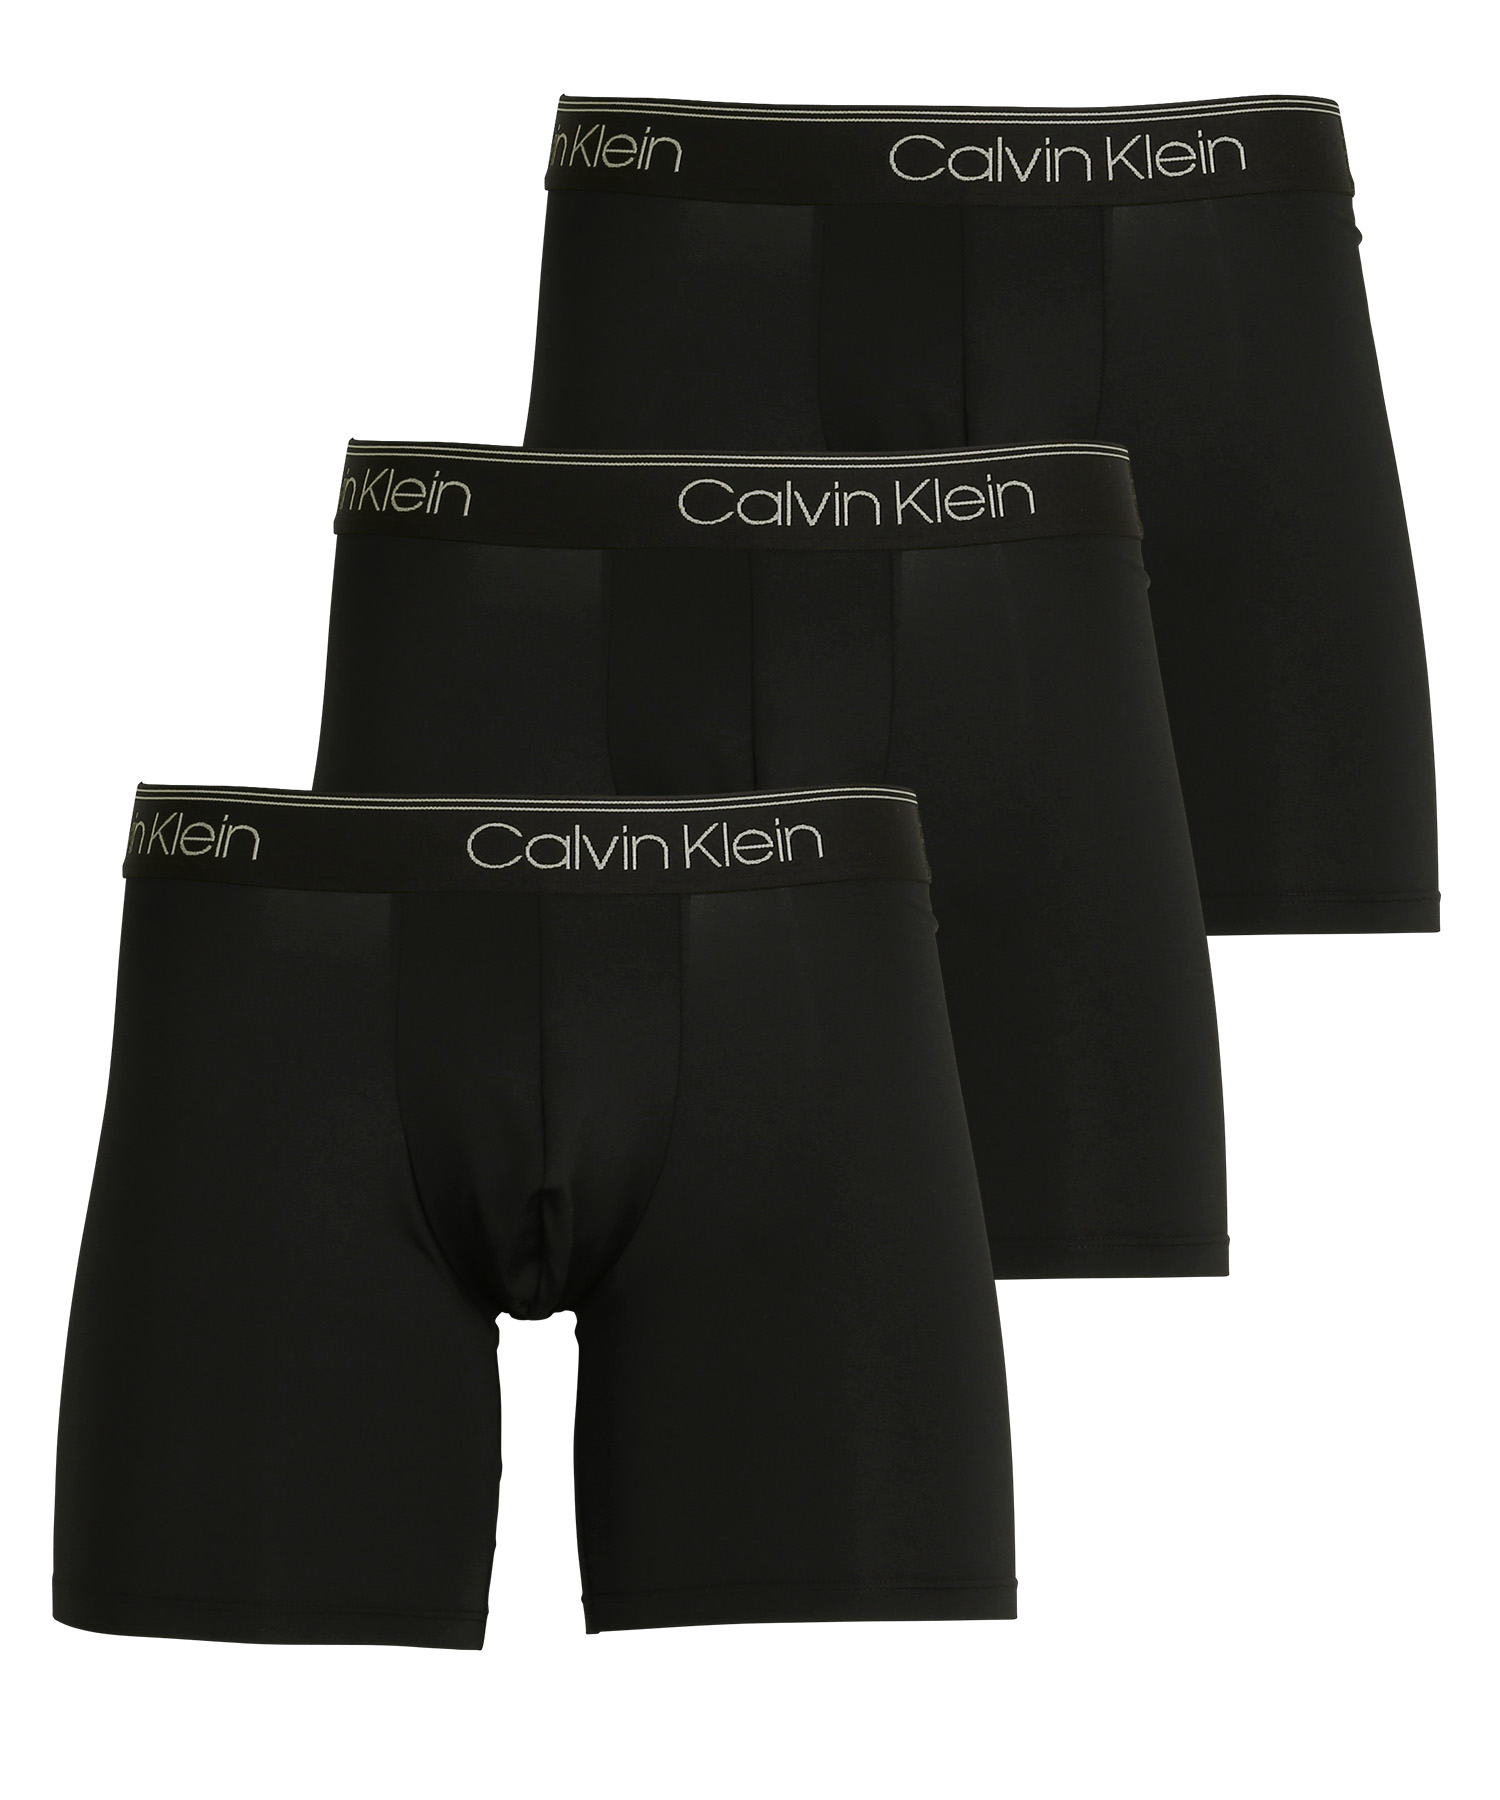 カルバンクライン ボクサーパンツ 3枚セット メンズ ロング Calvin Klein アンダーウェア 男性下着 ツルツル 速乾 CK ロゴ 高級  ハイブランド